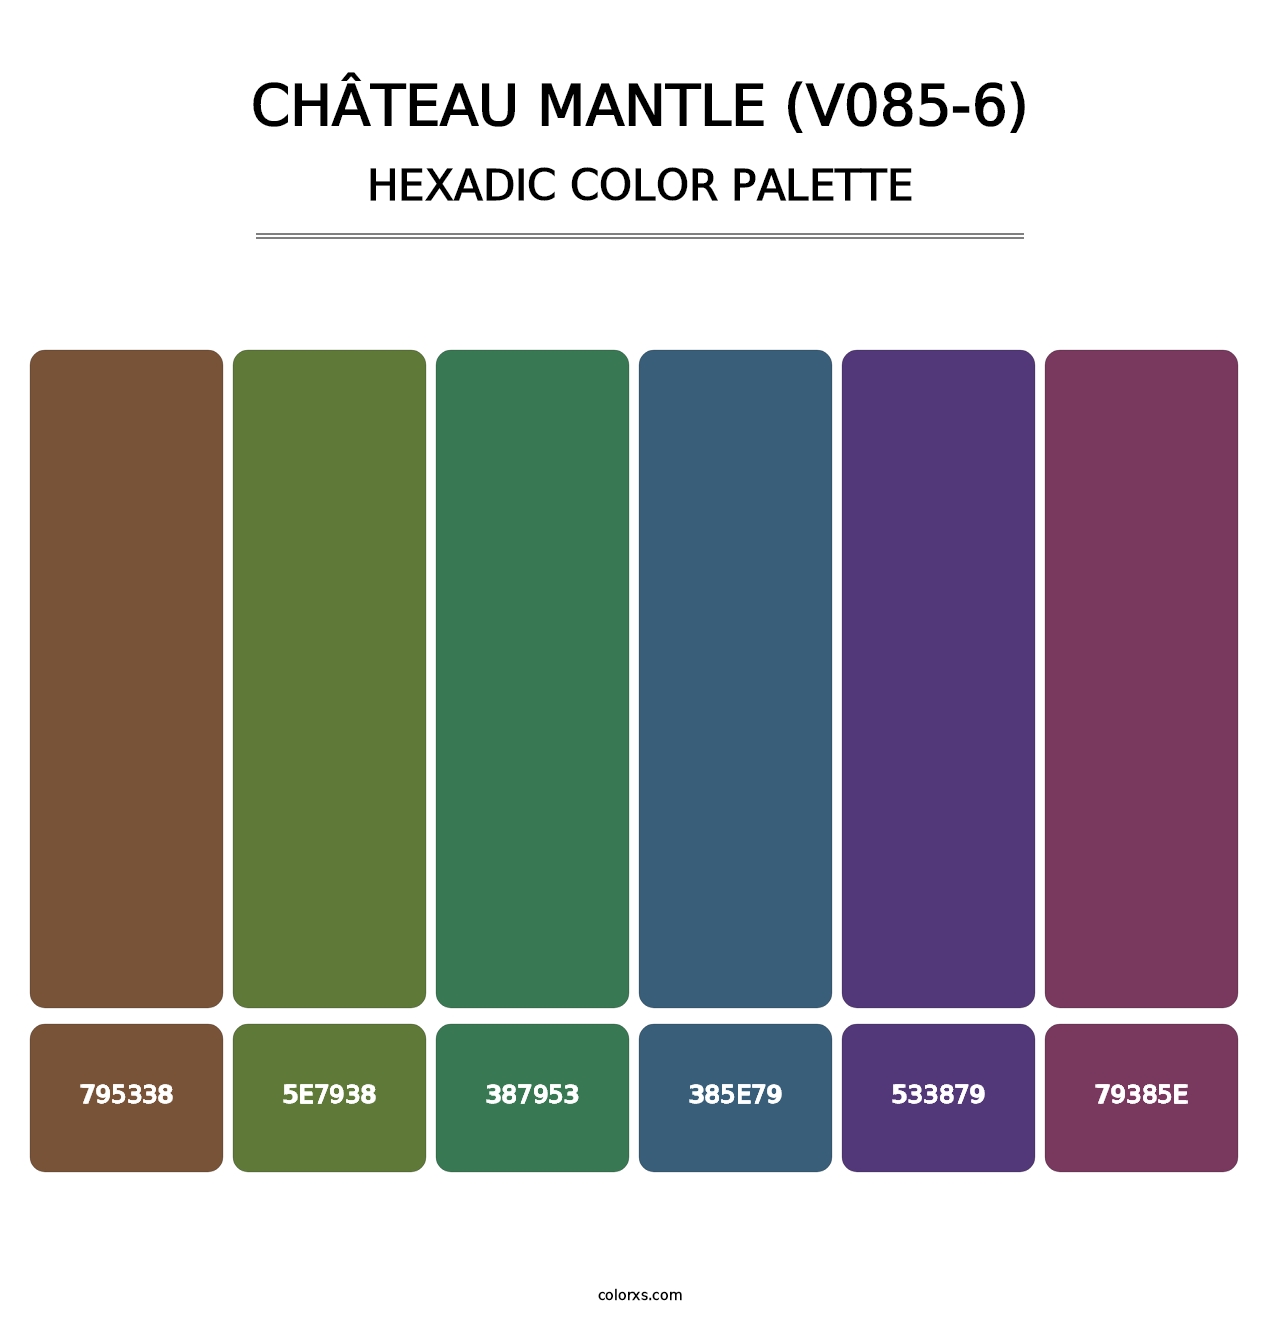 Château Mantle (V085-6) - Hexadic Color Palette